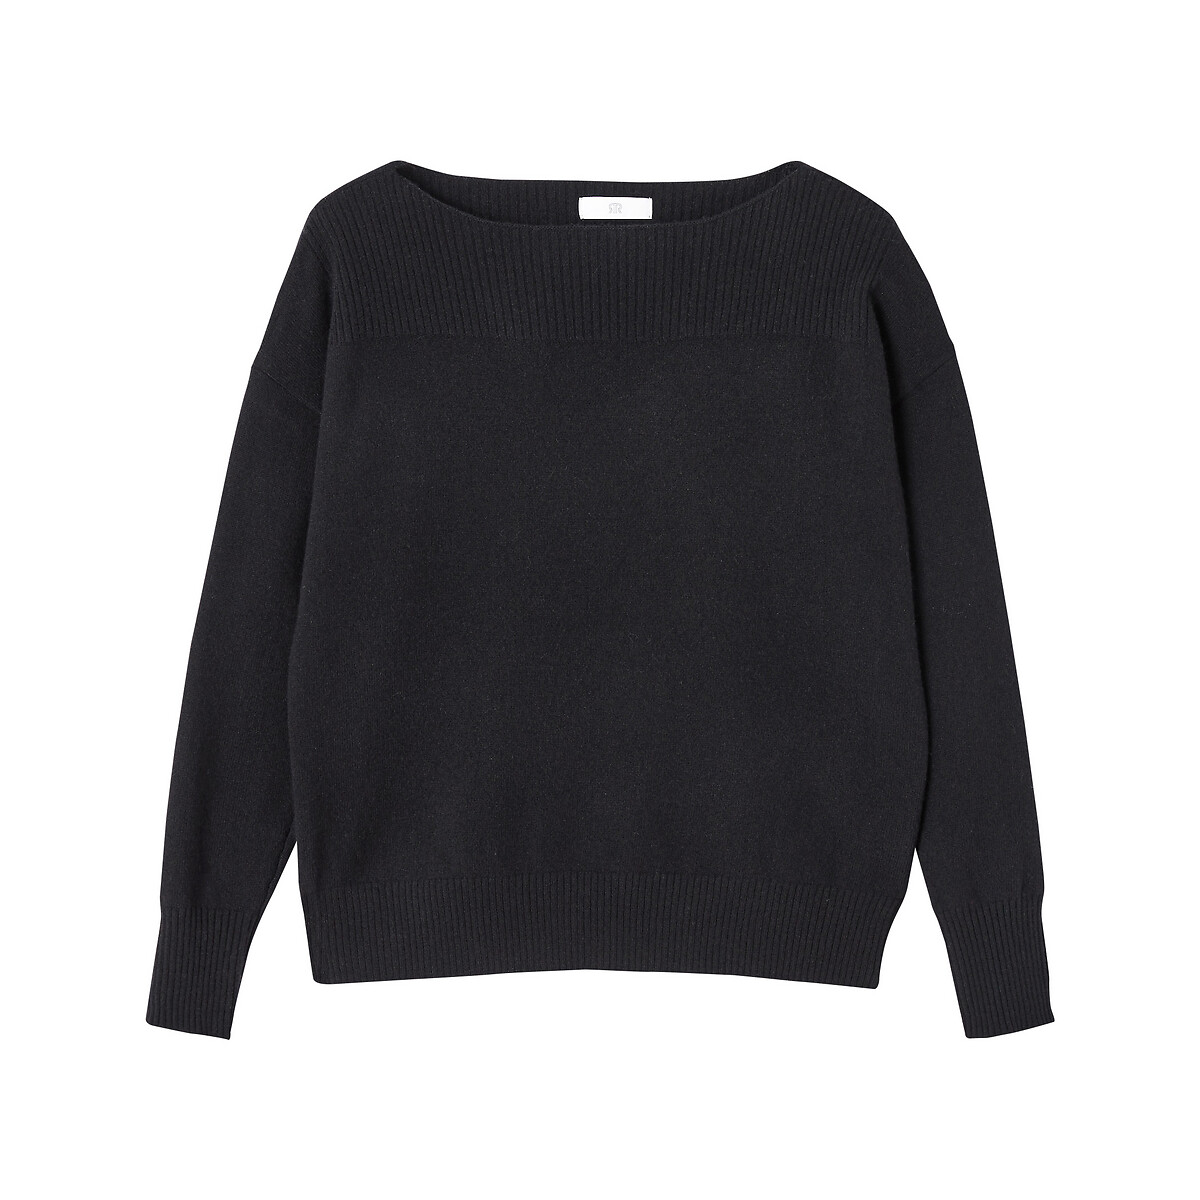 Пуловер с вырезом-лодочкой из кашемира тонкий трикотаж XXL черный